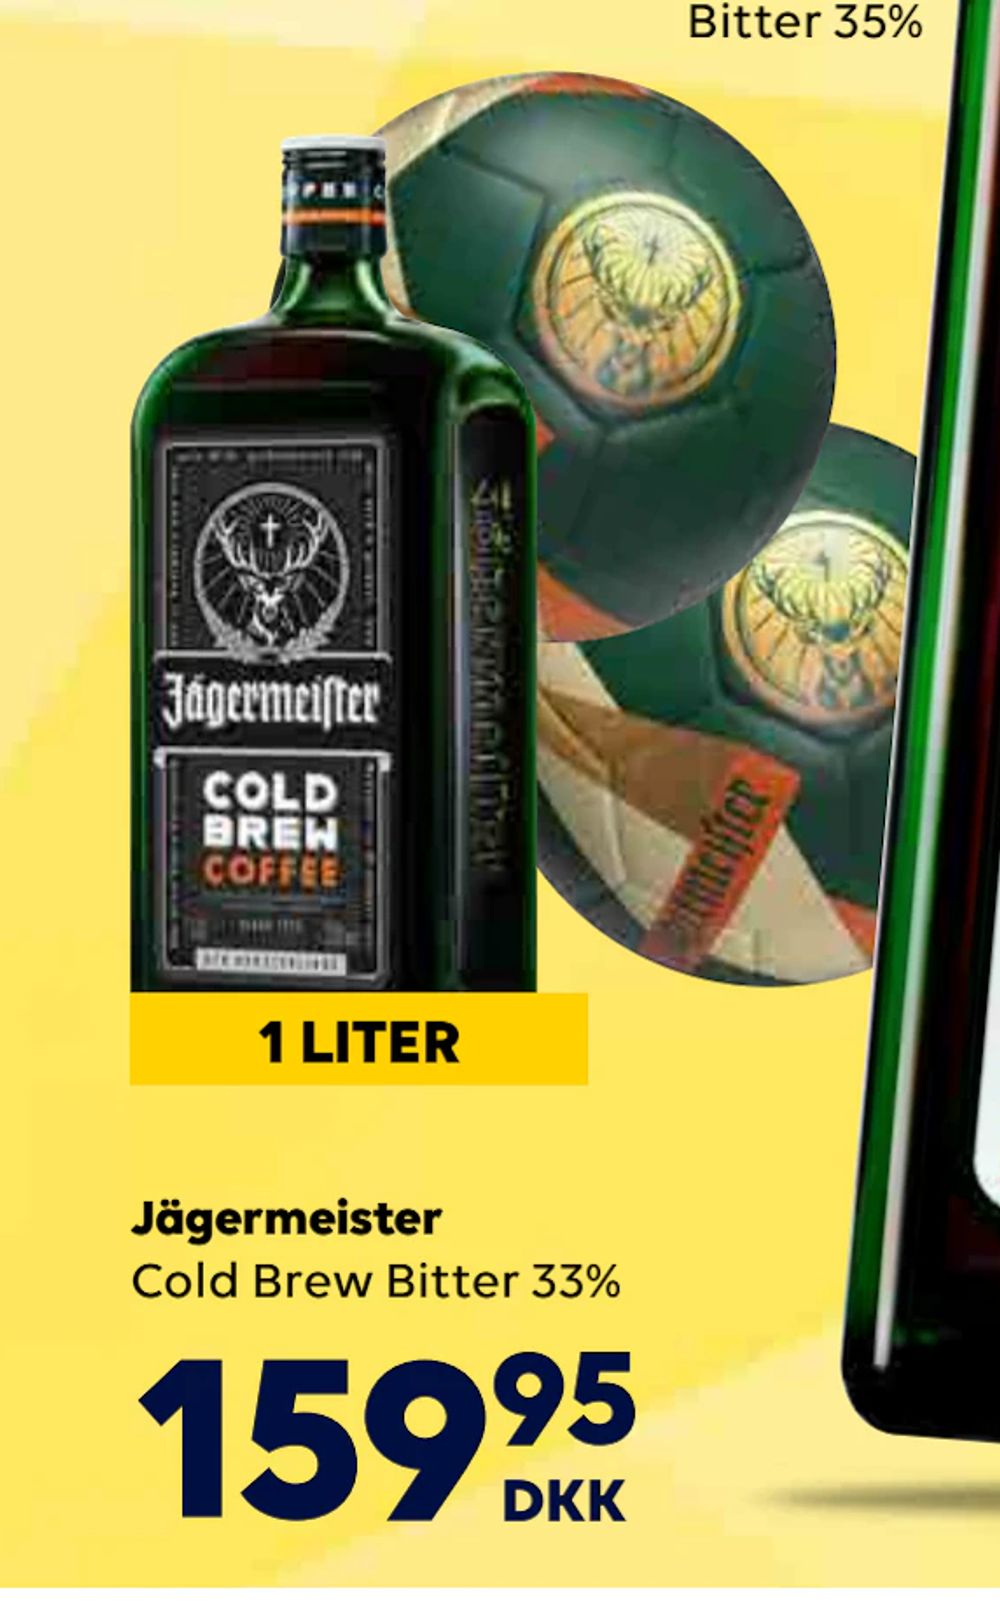 Tilbud på Jägermeister fra BorderShop til 159,95 kr.